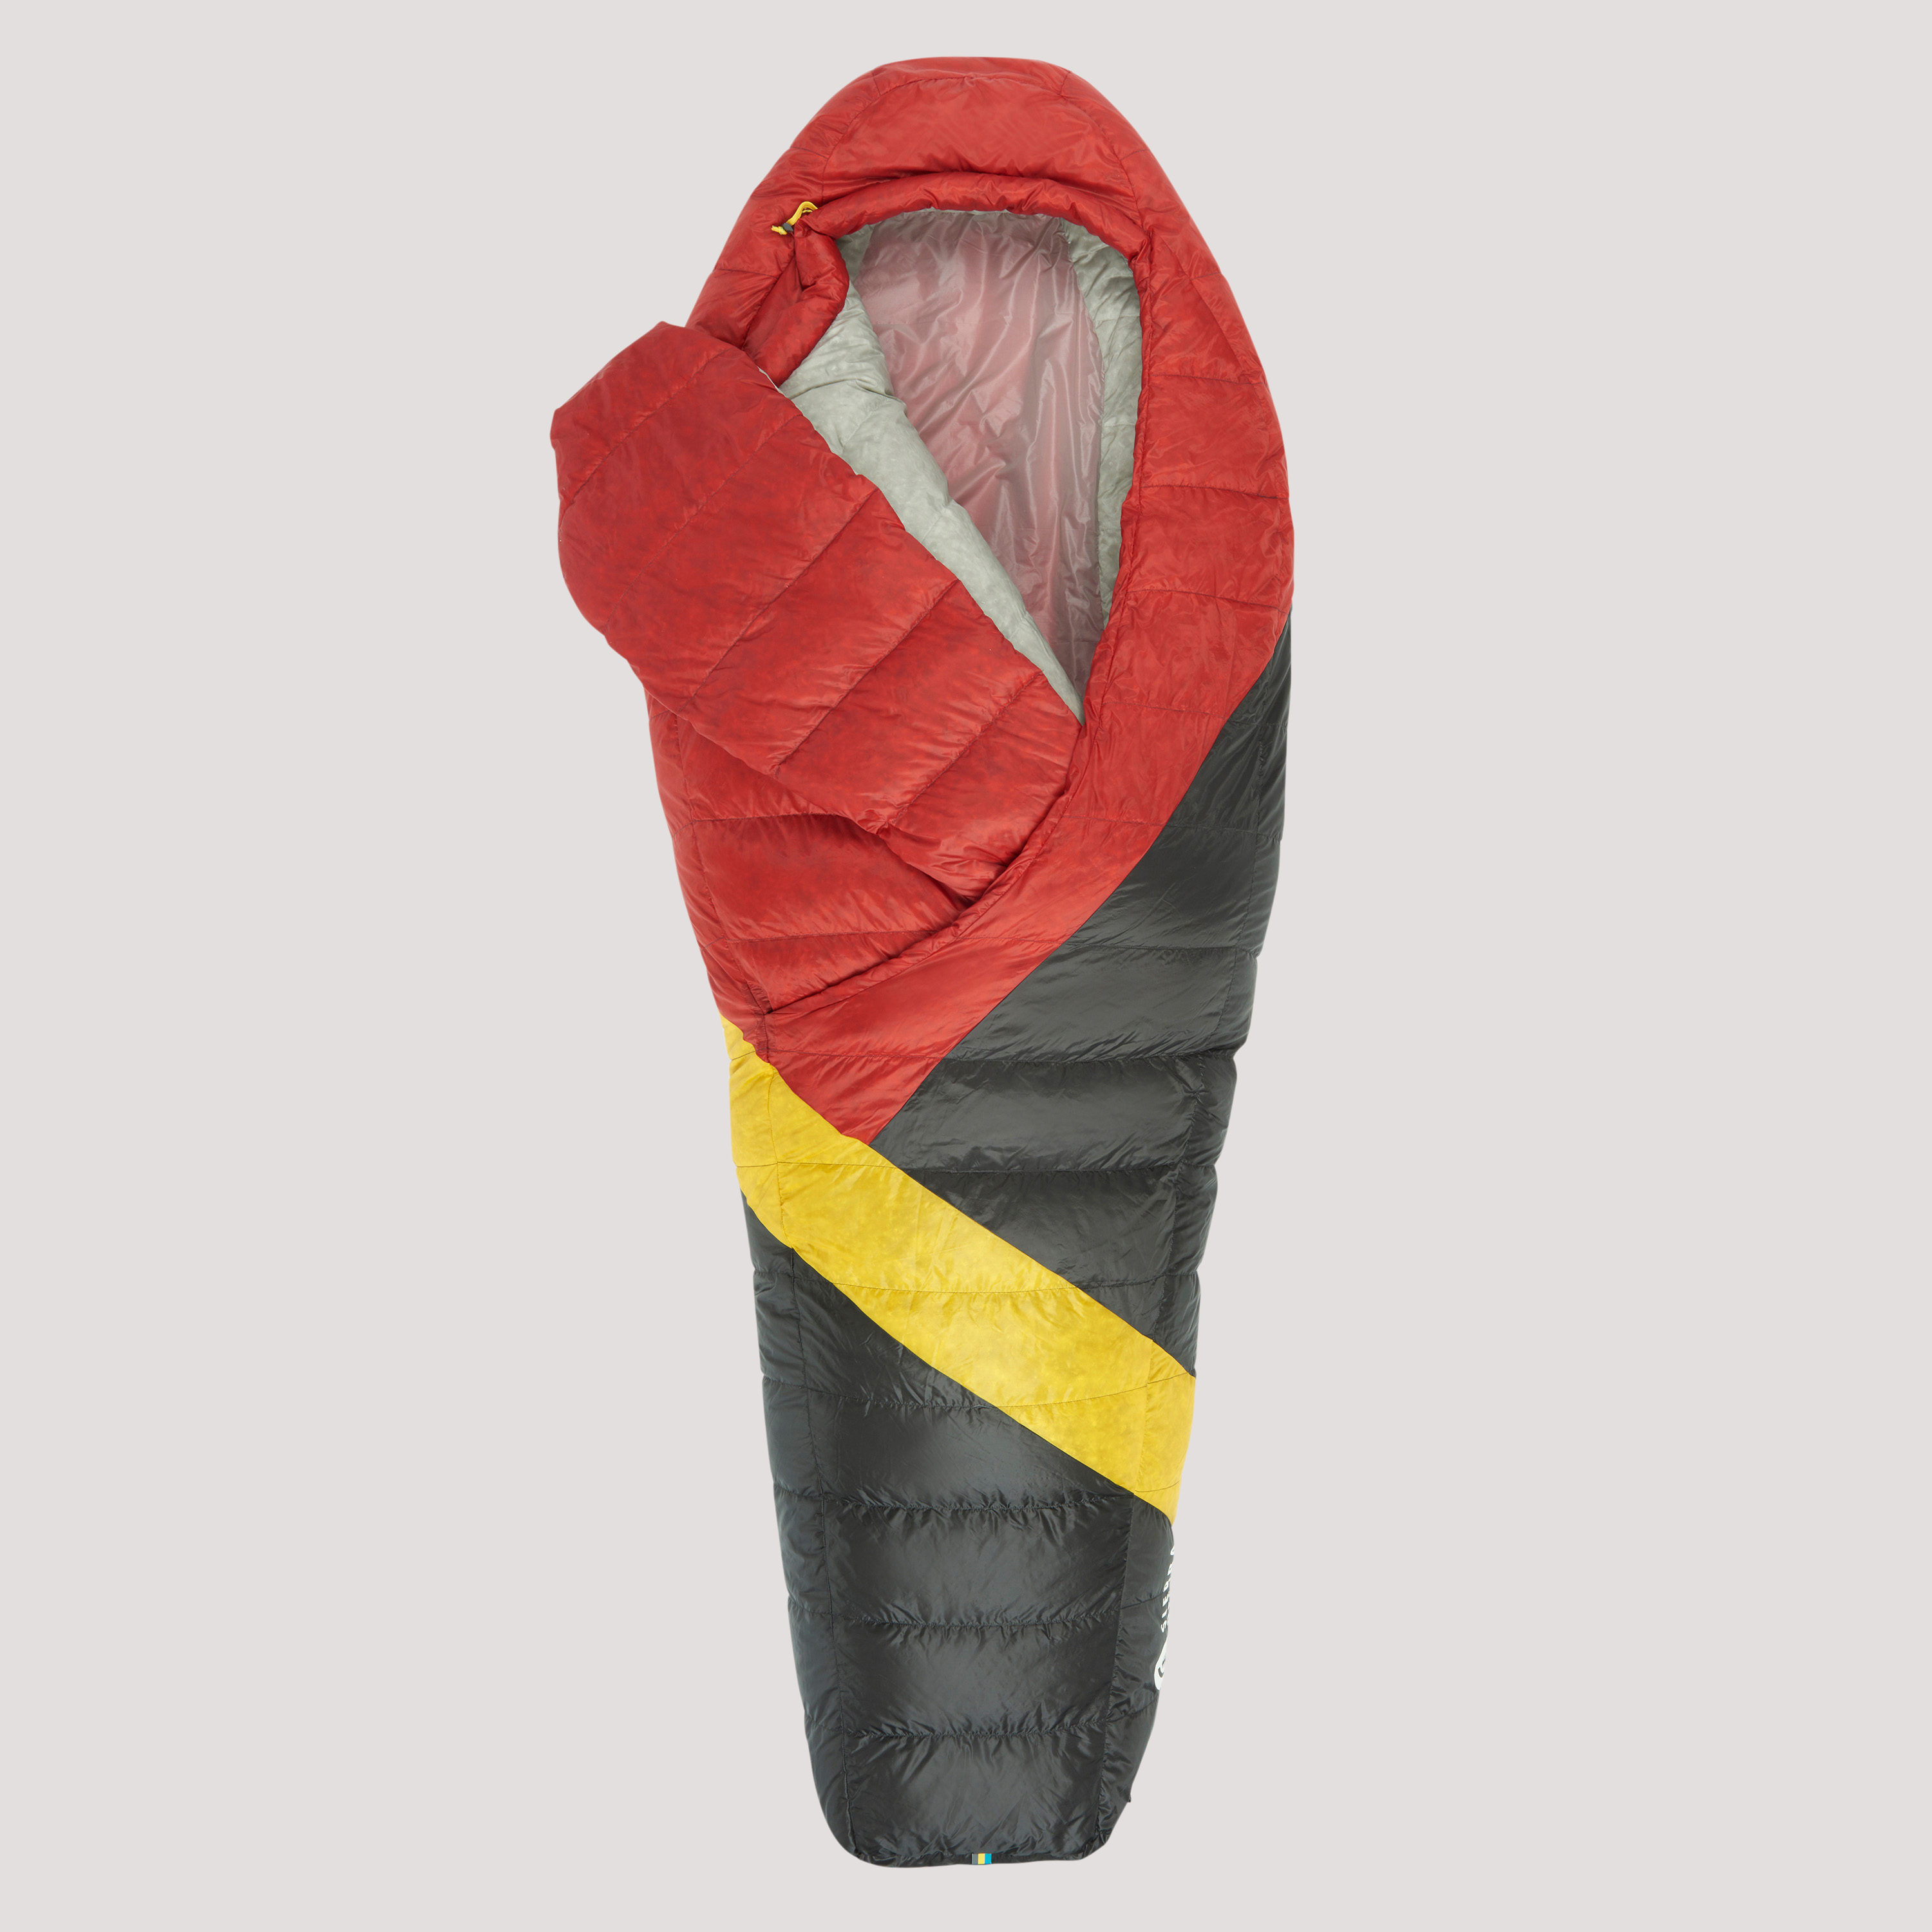 Sierra Designs Cloud 20 sleeping bag, red/black, top view, partially opened